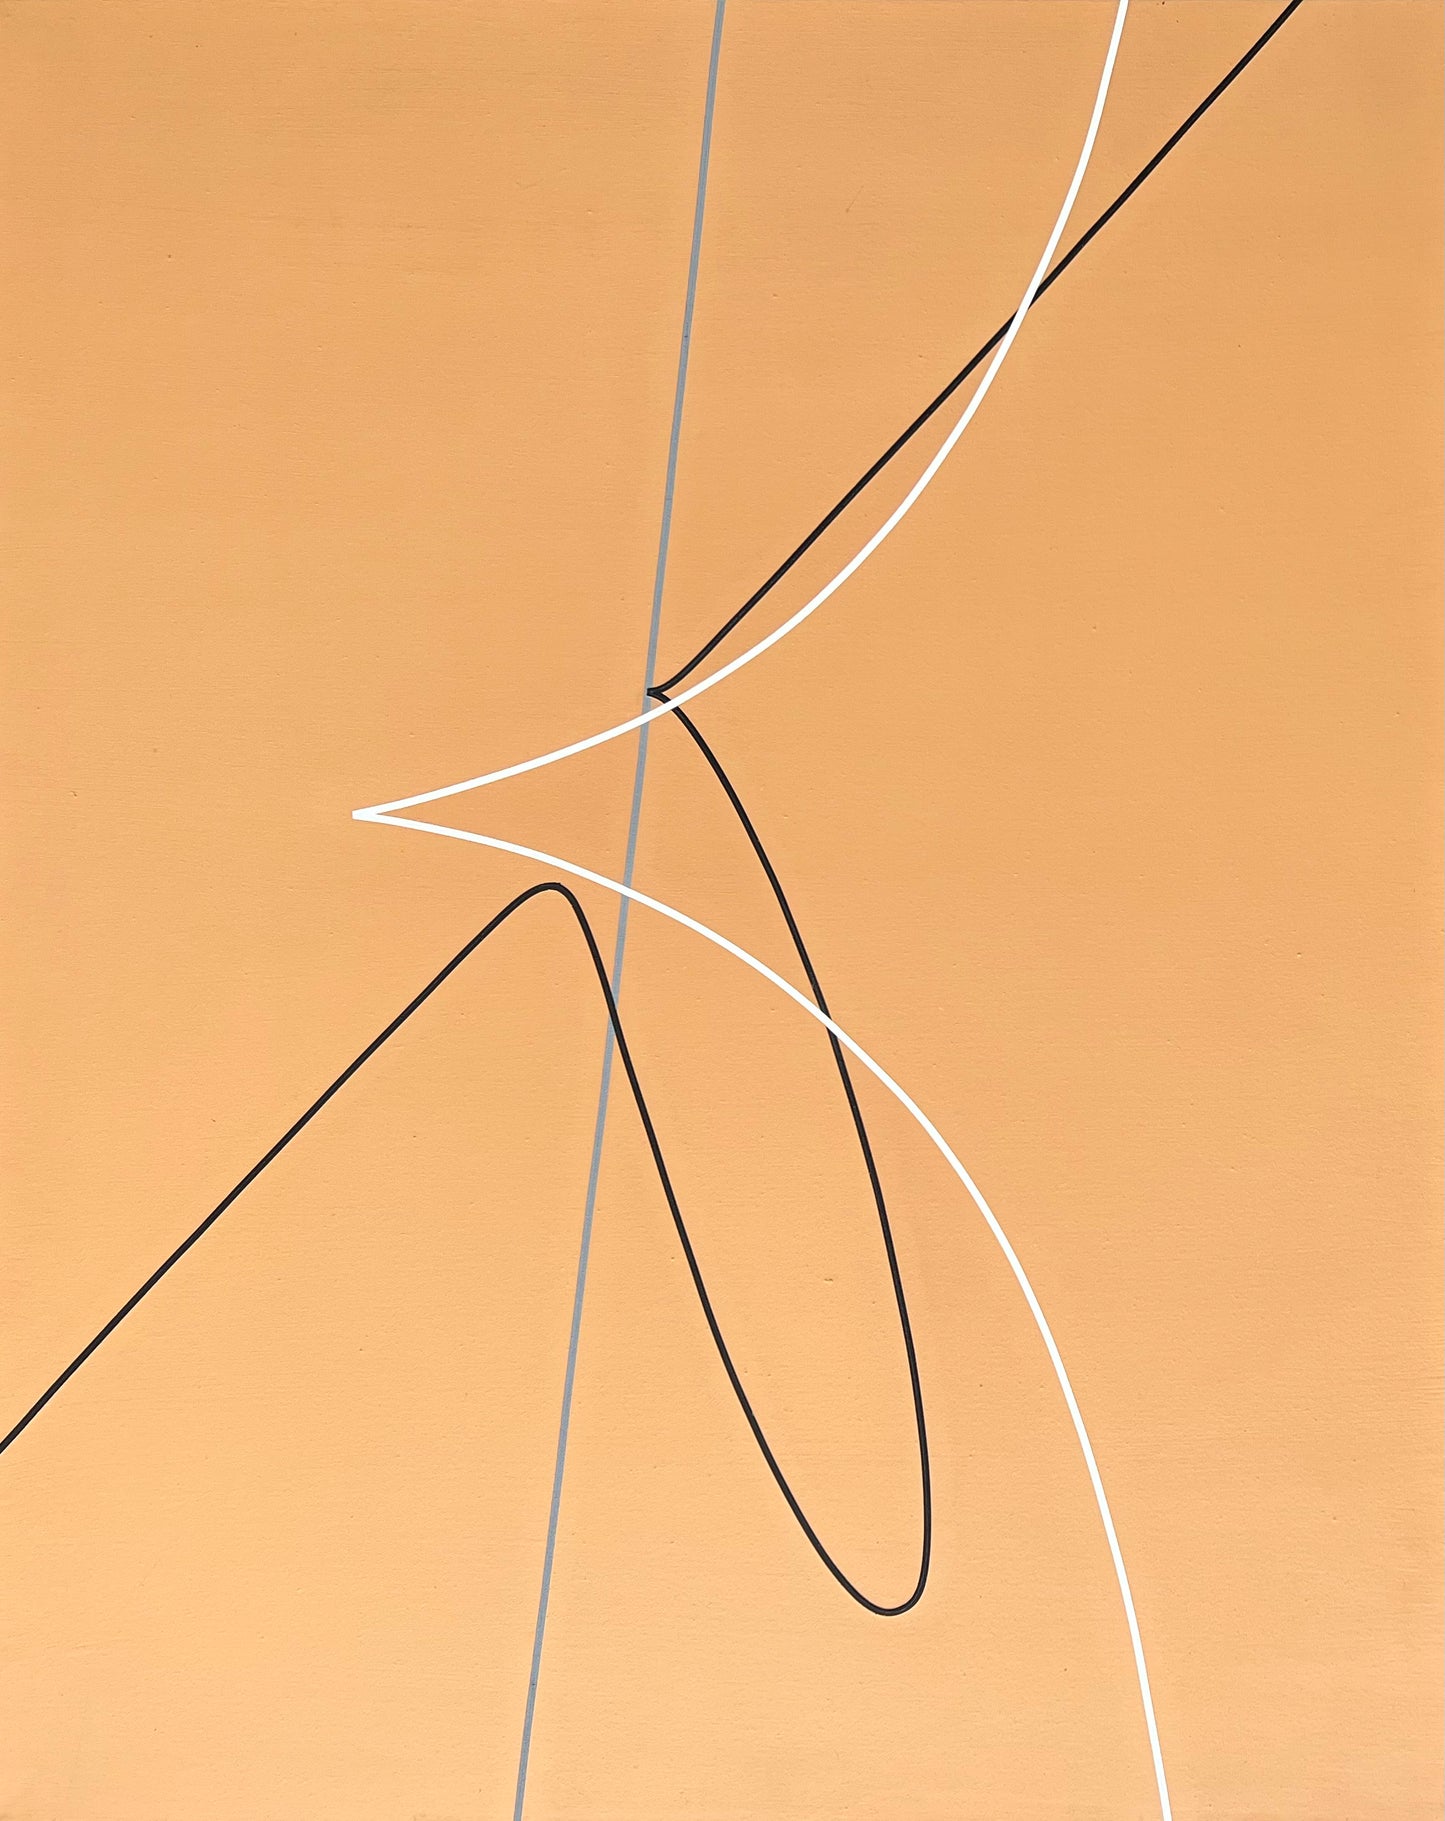 Steffen Jørgensen. Composition, 2010